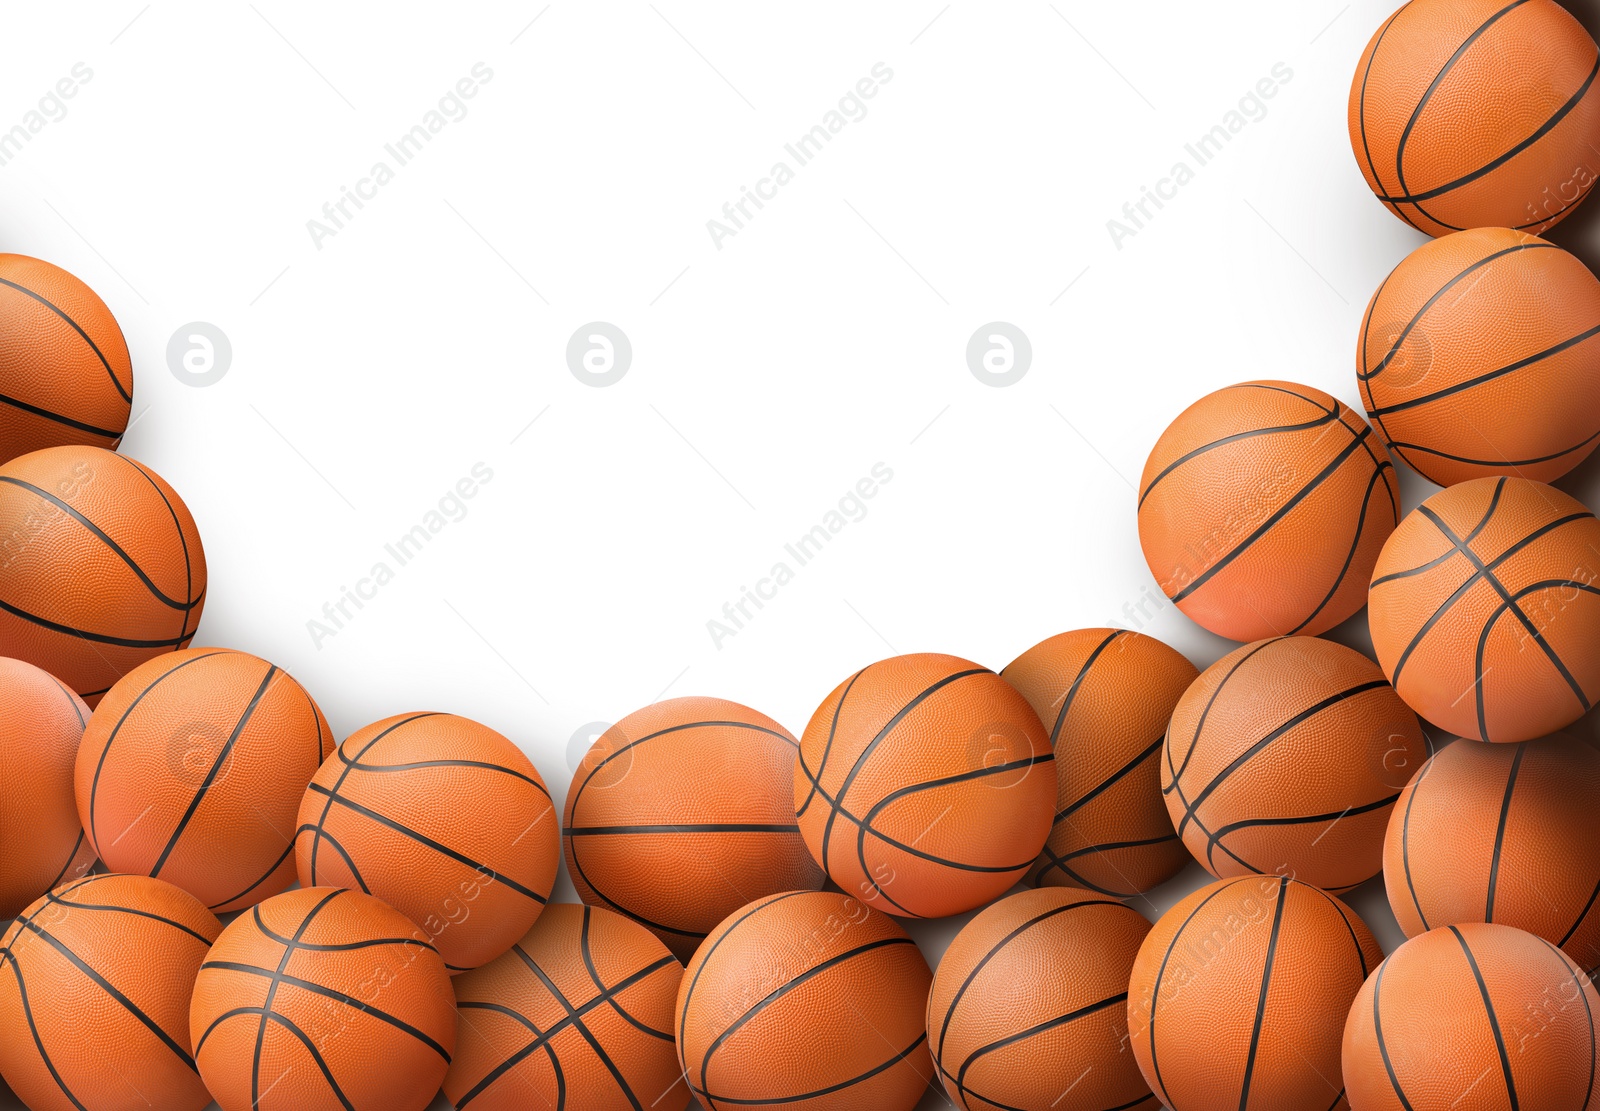 Image of Many orange basketball balls on white background 